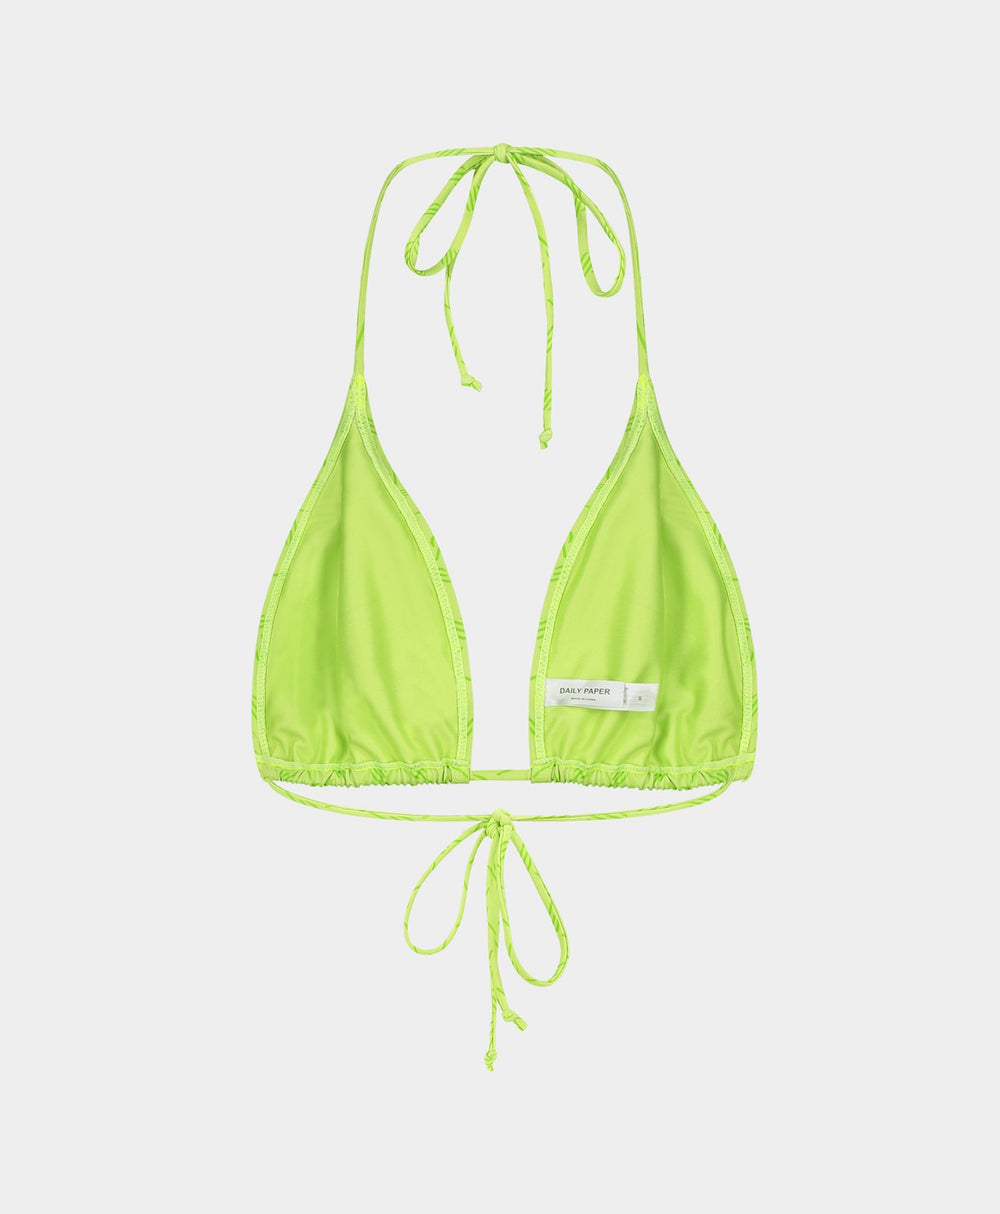 DP - Daiquiri Green Zazi Monogram Bikini Top - Packshot - Front